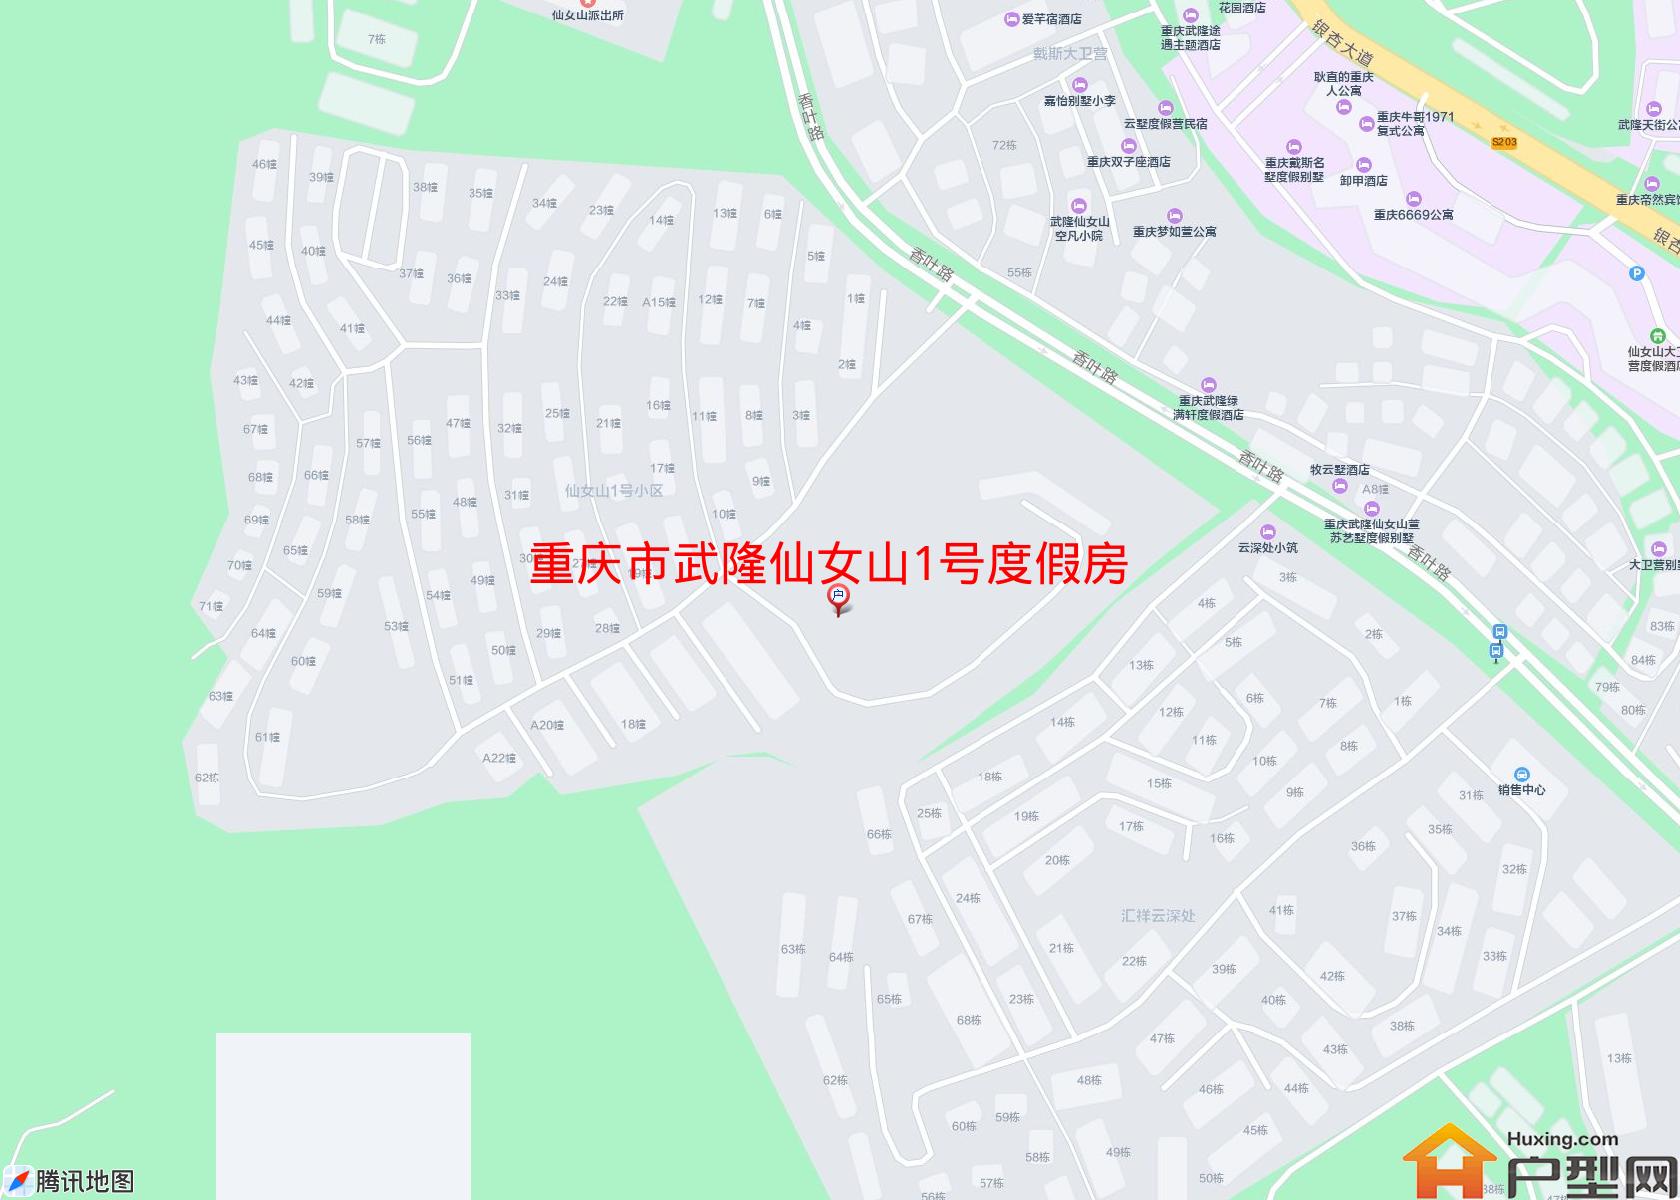 武隆仙女山1号度假房小区 - 户型网